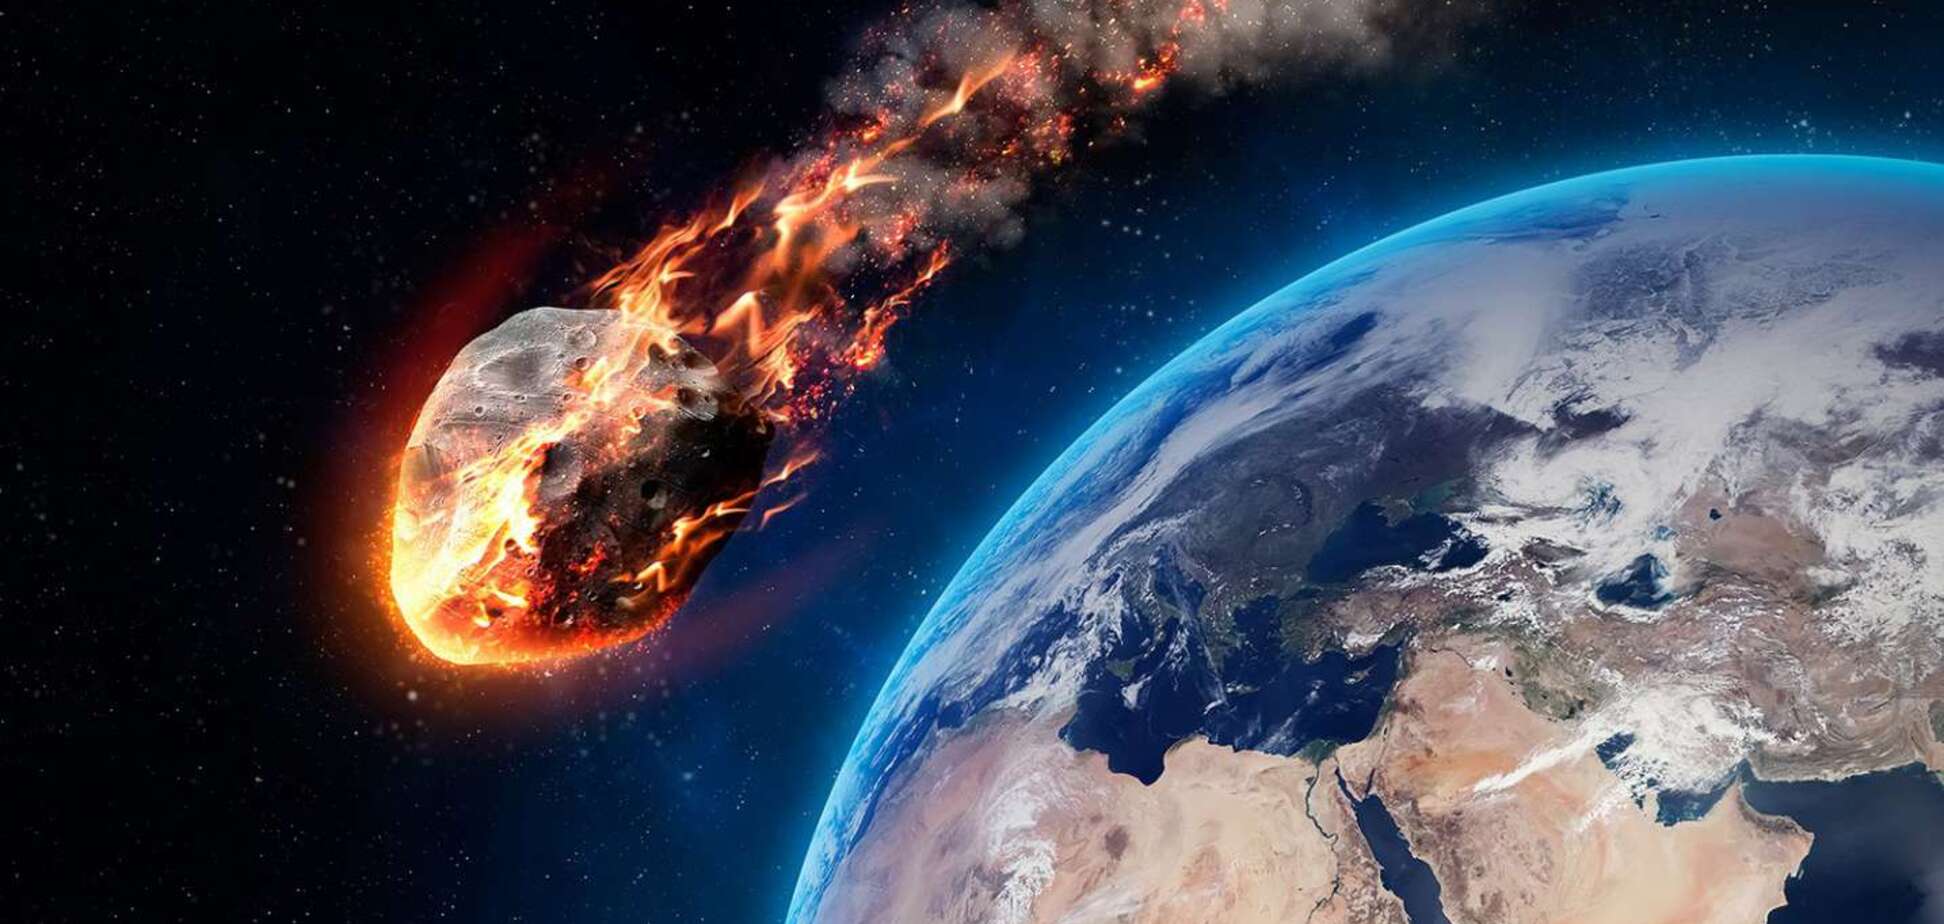 Громадный астероид несется к Земле: ученый ответил, будет ли конец света